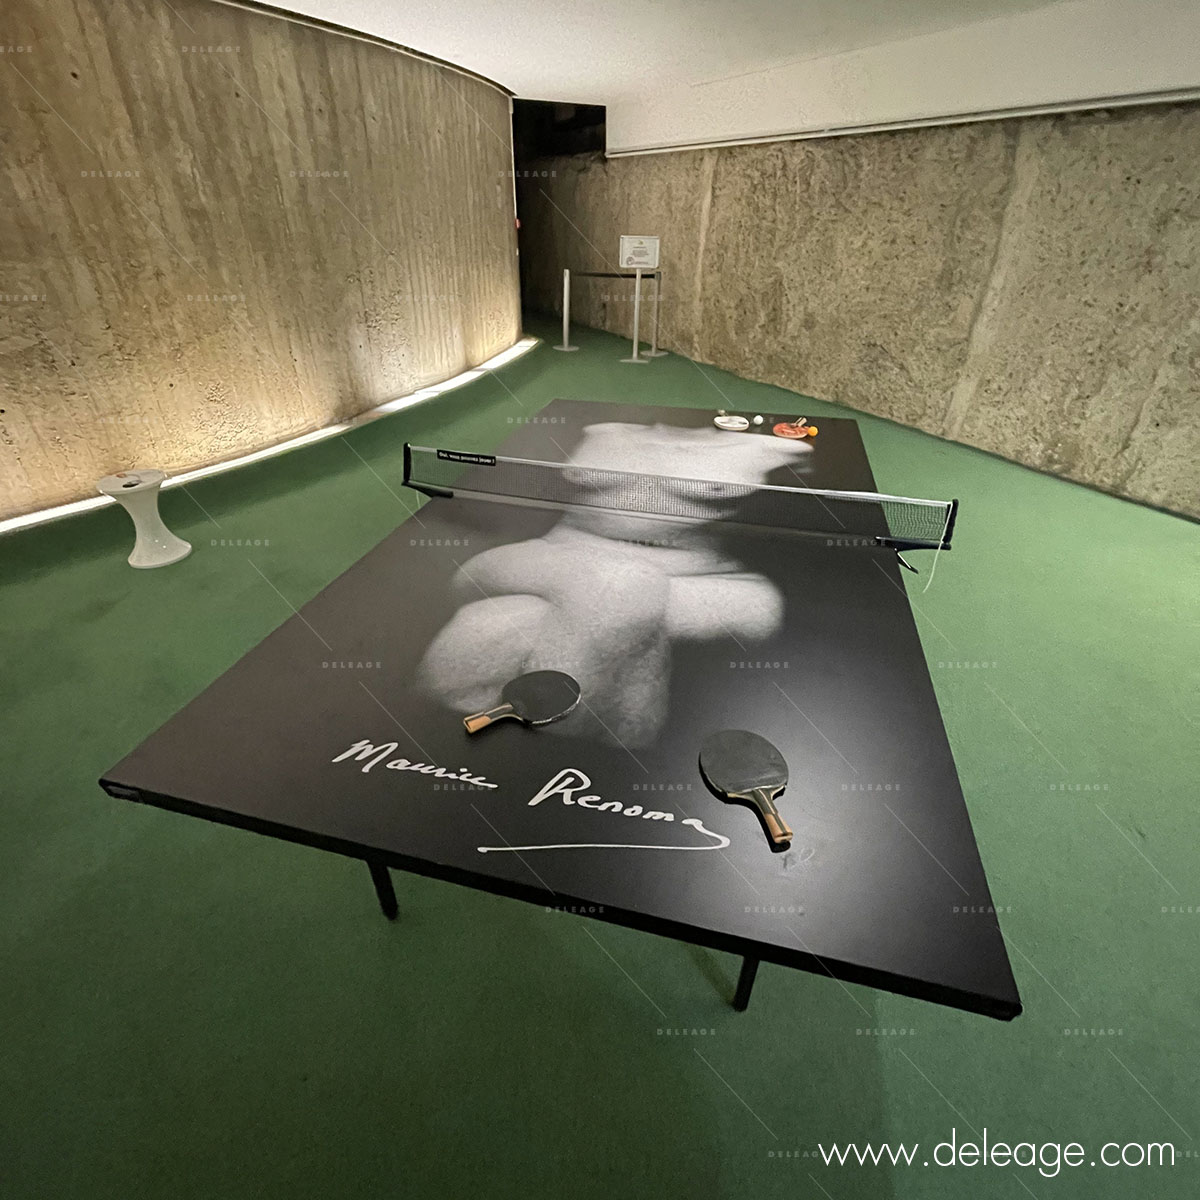 Décor adhésif de table ping pong